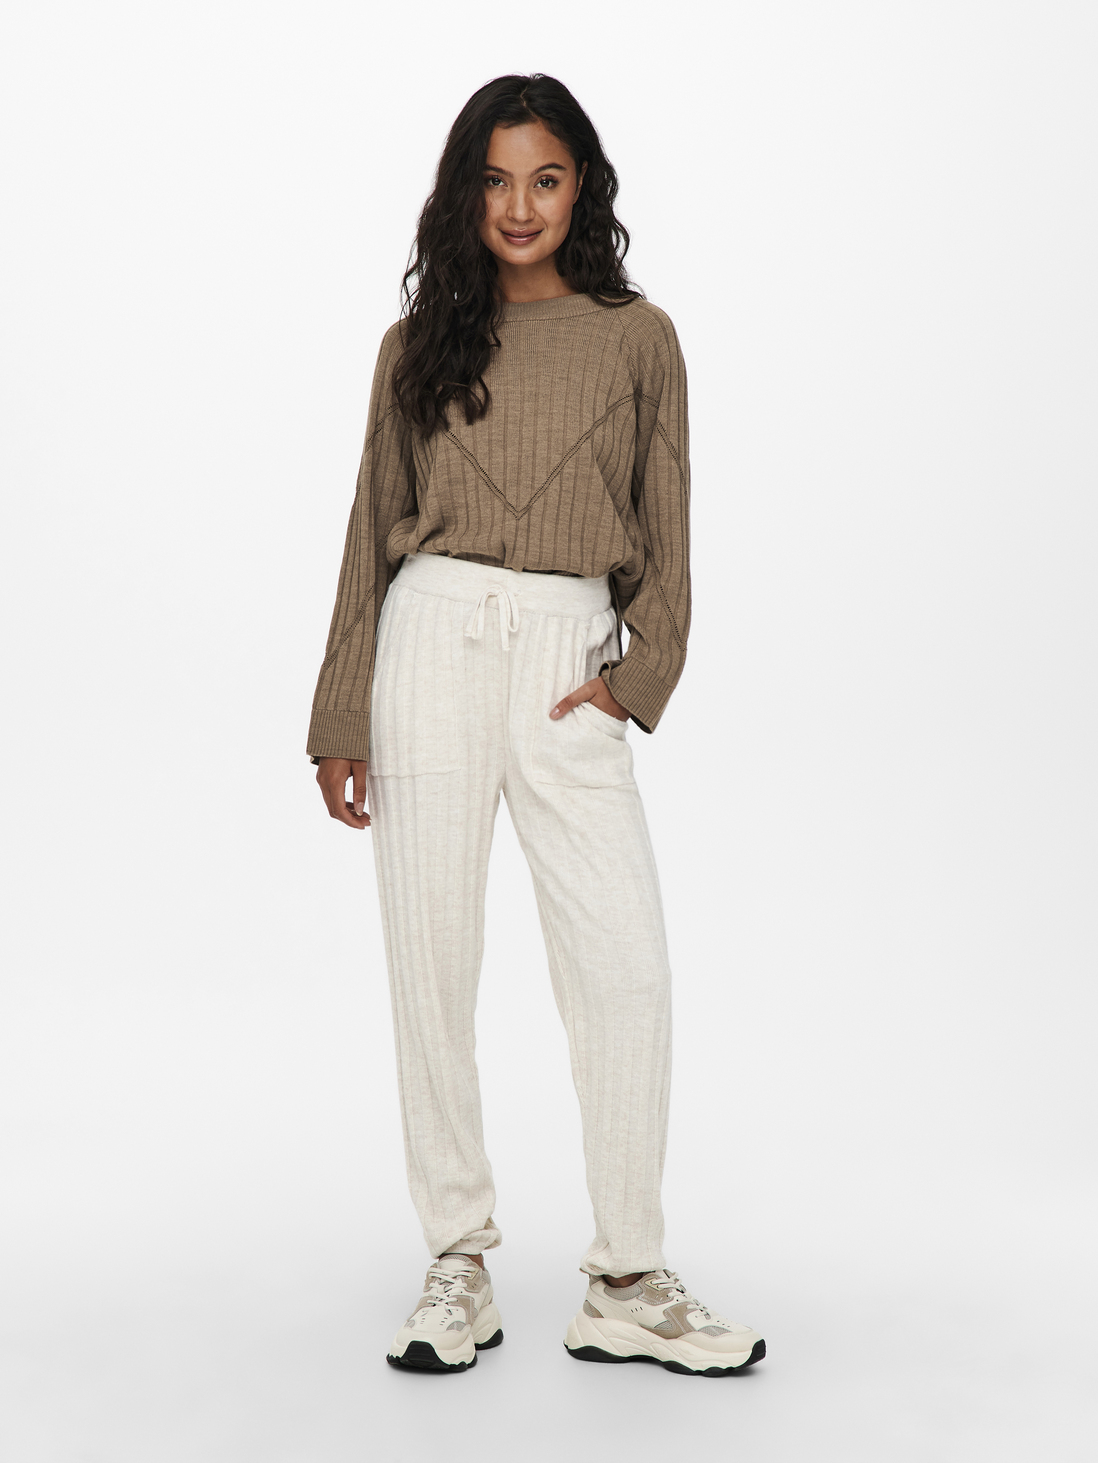 VENTE FINALE - Pantalon en tricot côtelé Tessa, PIERRE PONCE, large